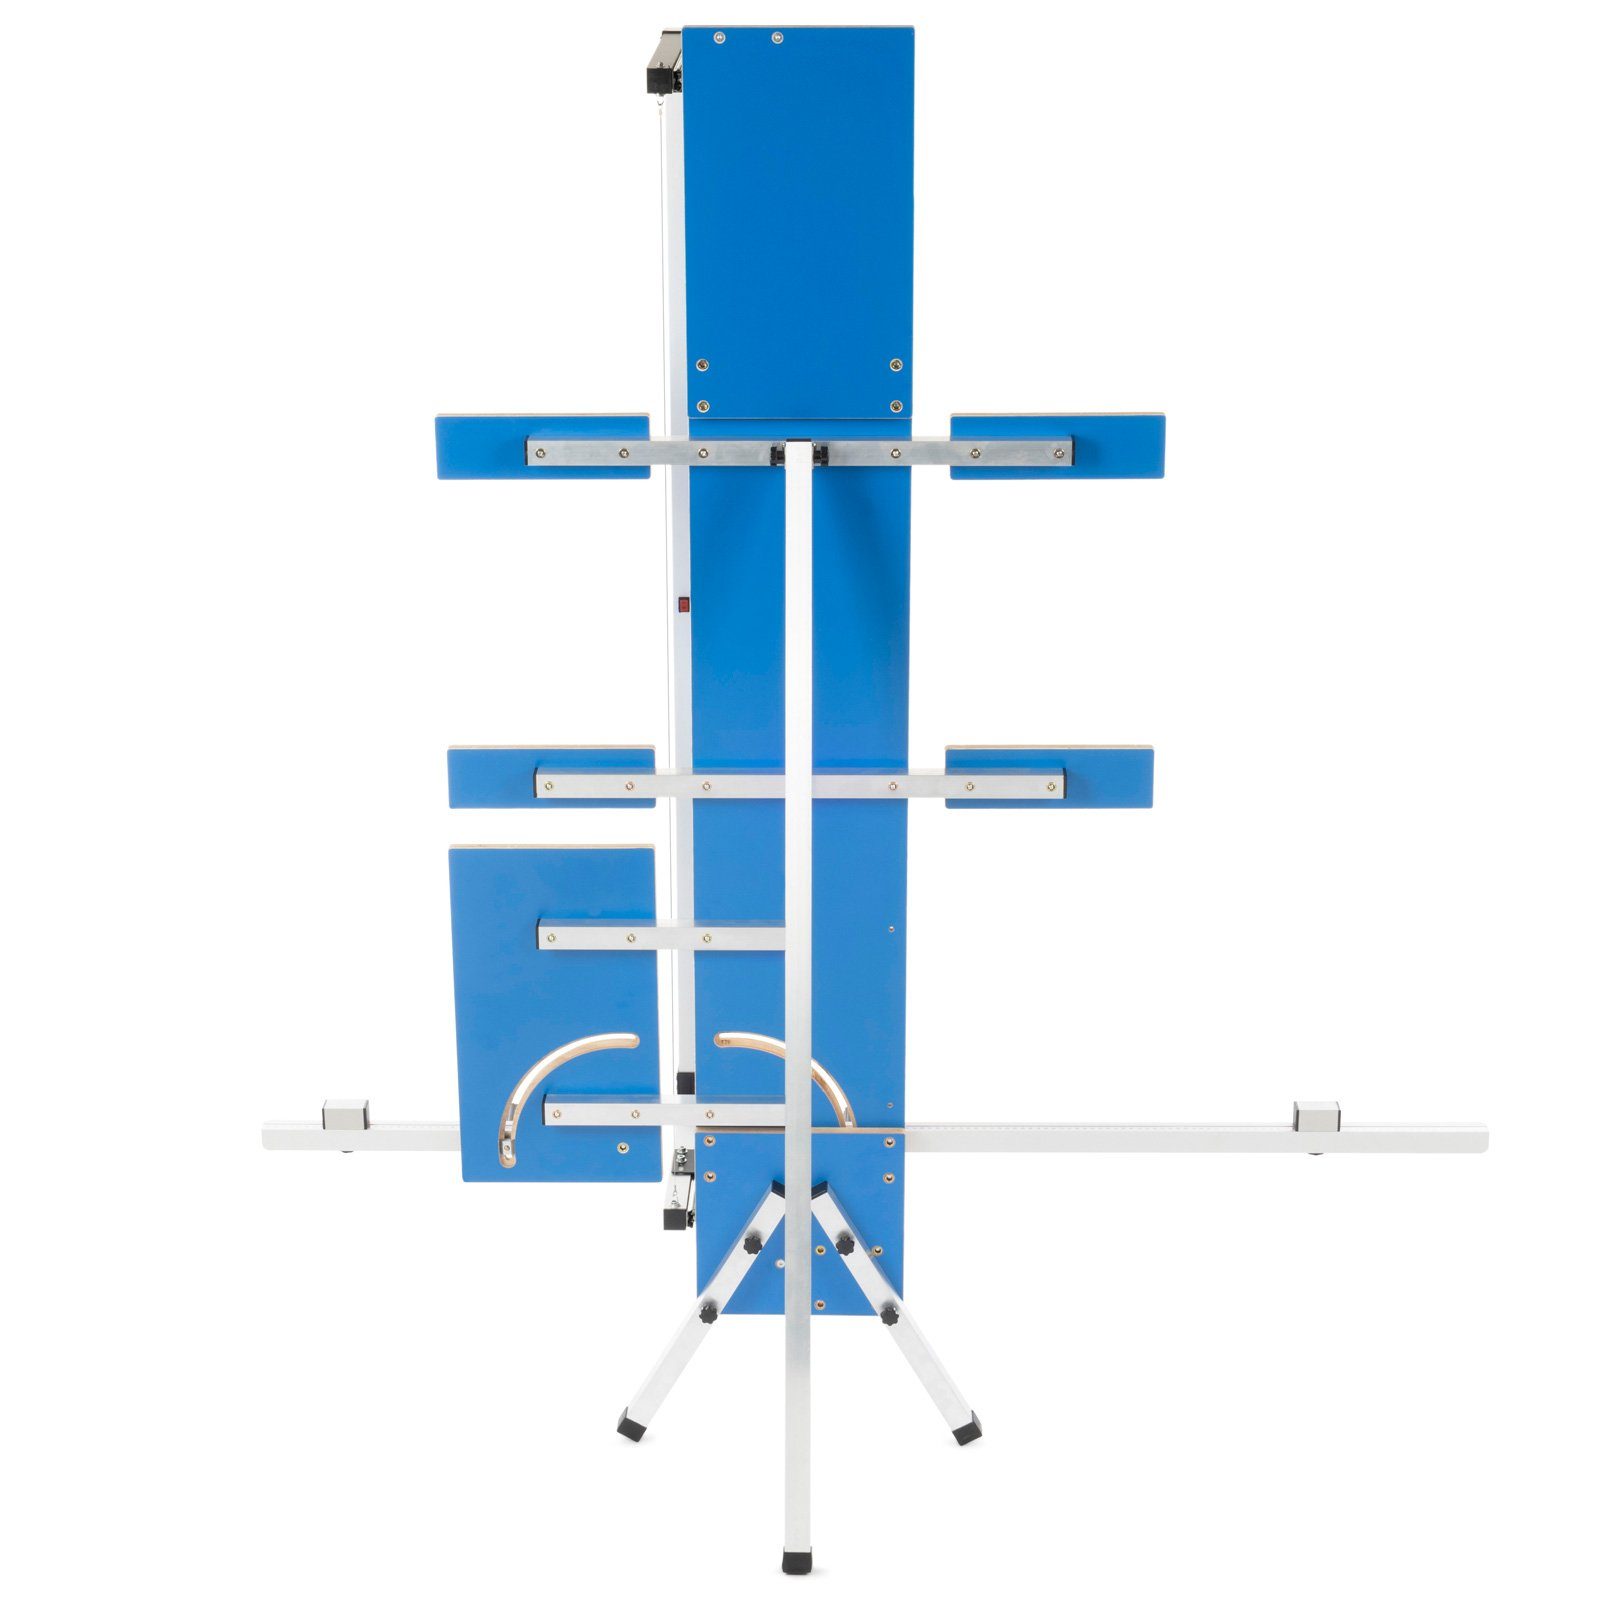 Styroporschneider, » Schneidedraht 6 Kombi-Set BAUTEC + Heißdrahtschneider GAZELLE Schleifraspel » 10x